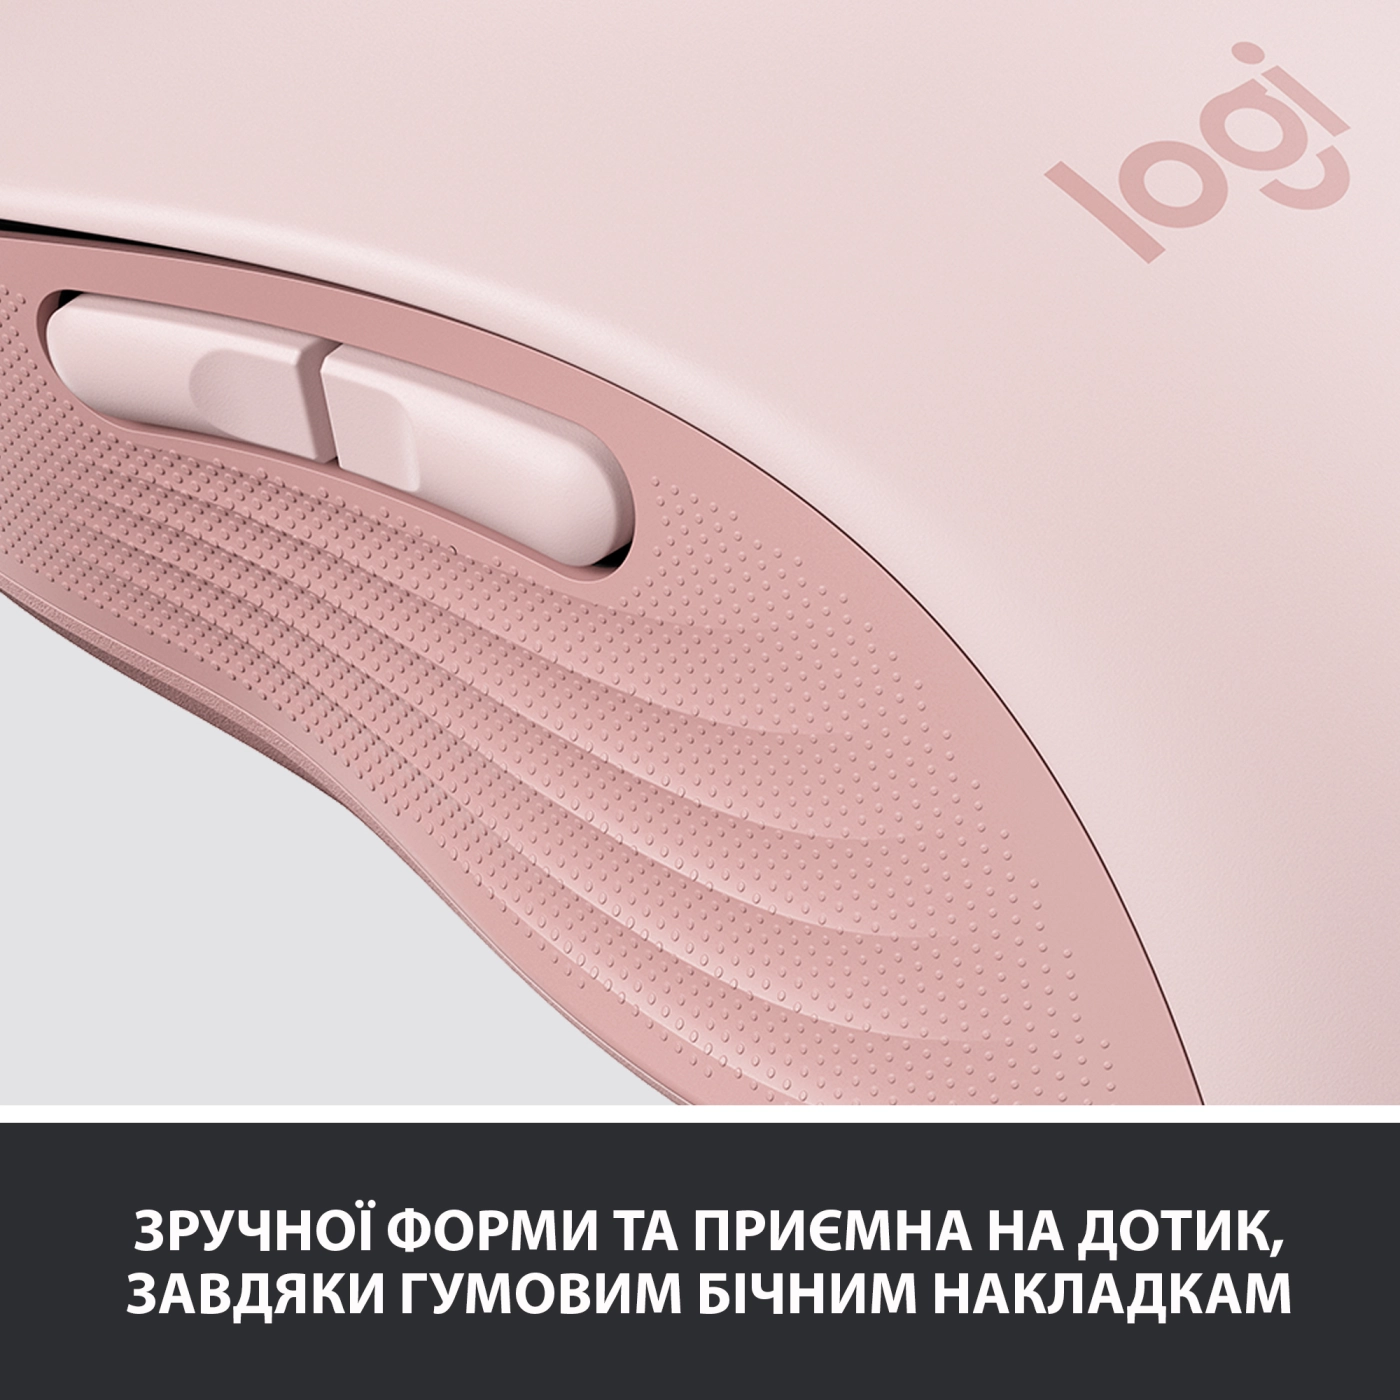 Купить Мышь Logitech Signature M650 L Wireless Mouse rose BT (910-006237) - фото 7